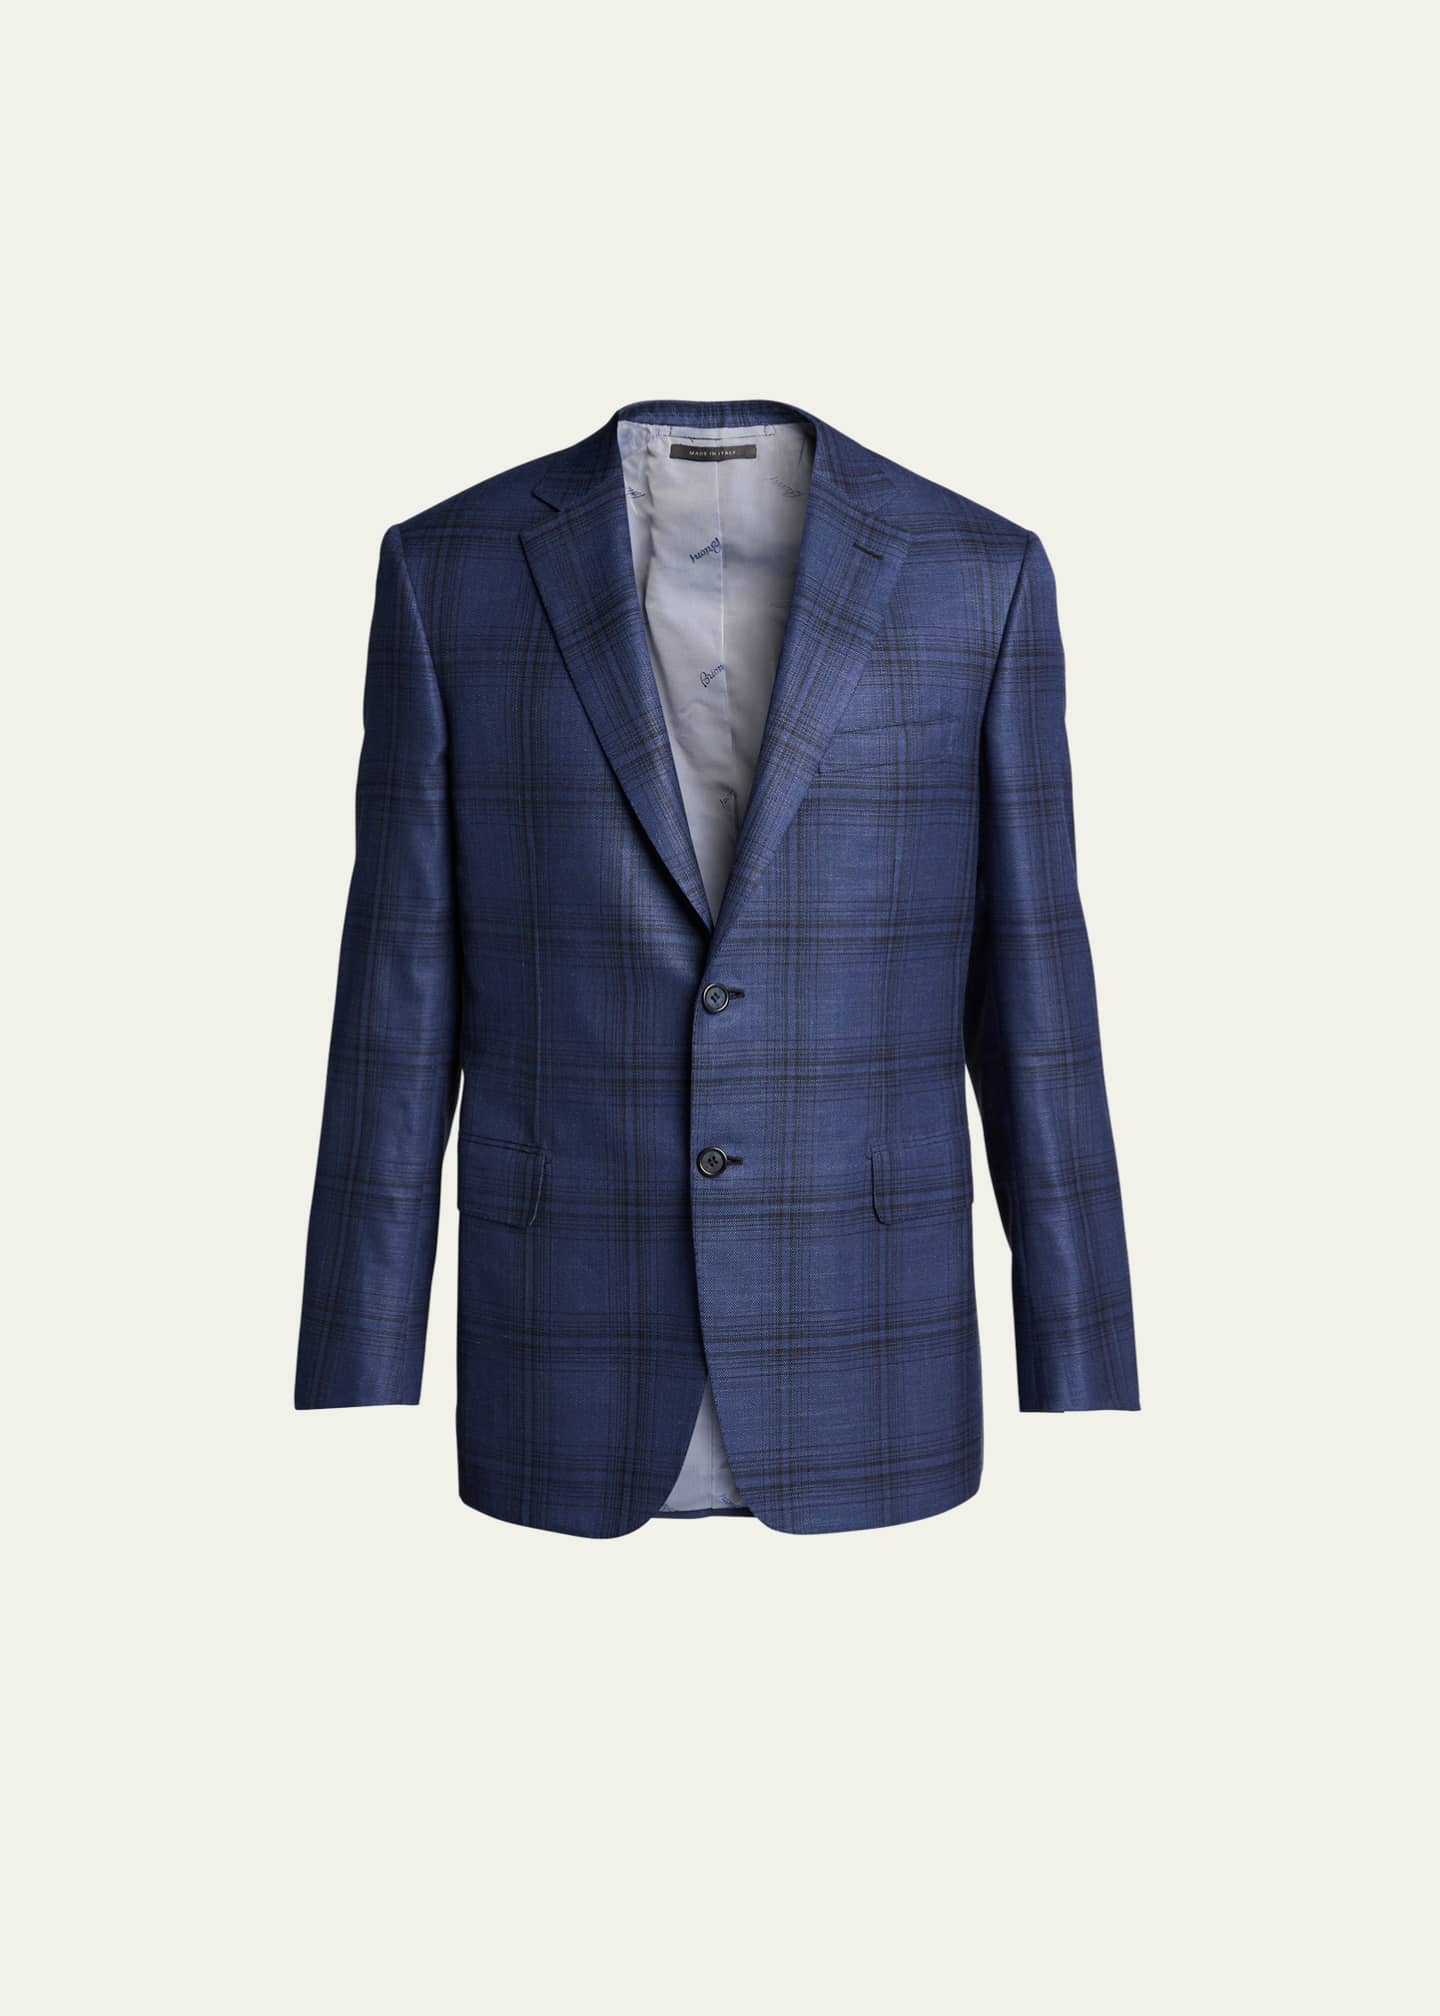 Brioni Men's Plaid Wool Sport Jacket - Bergdorf Goodman